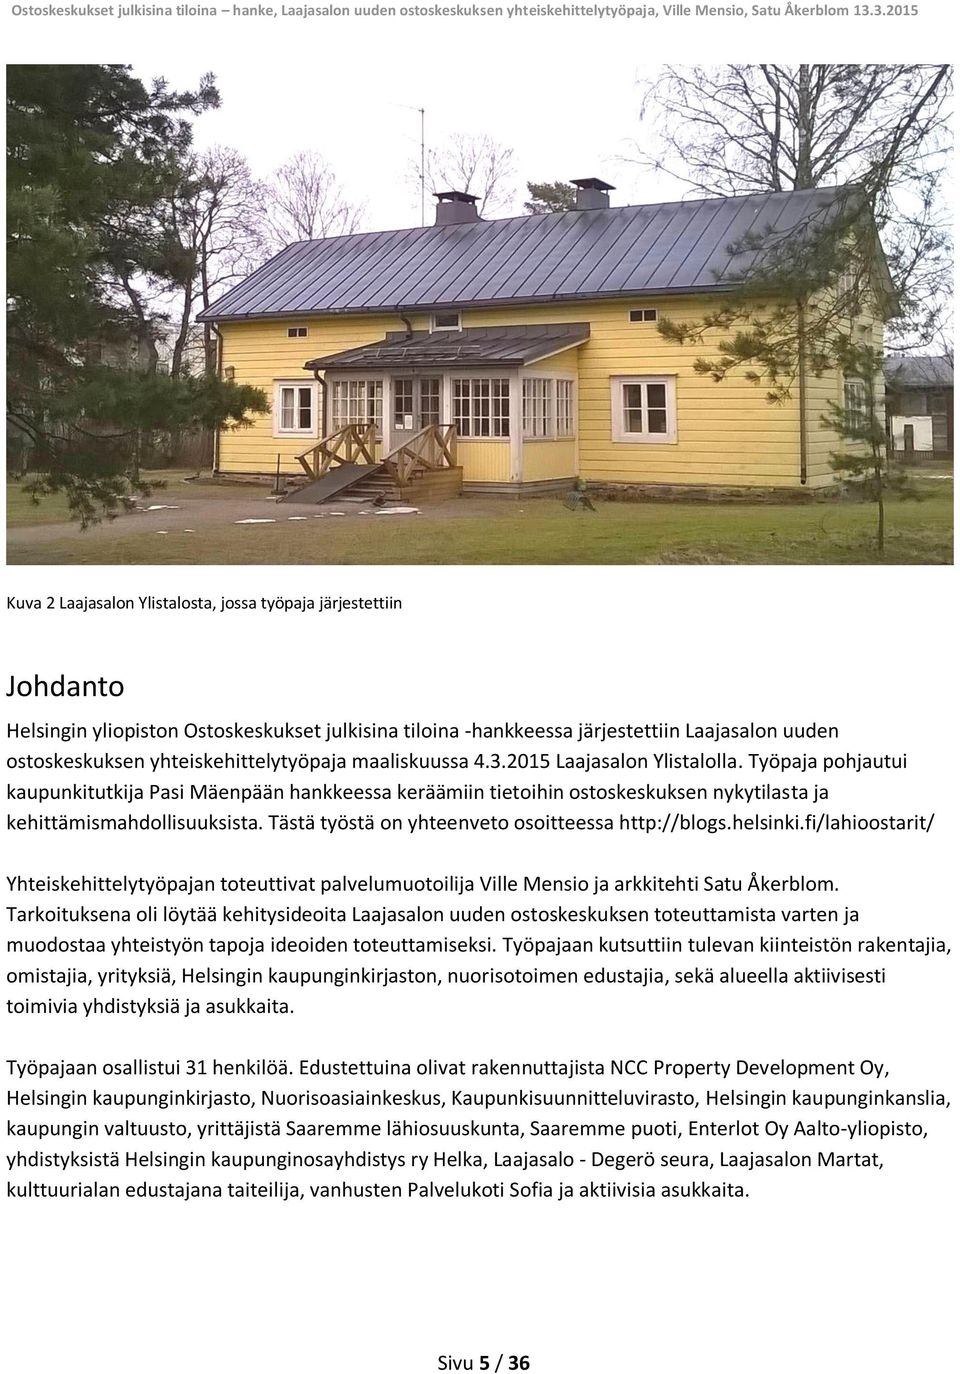 Työpaja pohjautui kaupunkitutkija Pasi Mäenpään hankkeessa keräämiin tietoihin ostoskeskuksen nykytilasta ja kehittämismahdollisuuksista. Tästä työstä on yhteenveto osoitteessa http://blogs.helsinki.